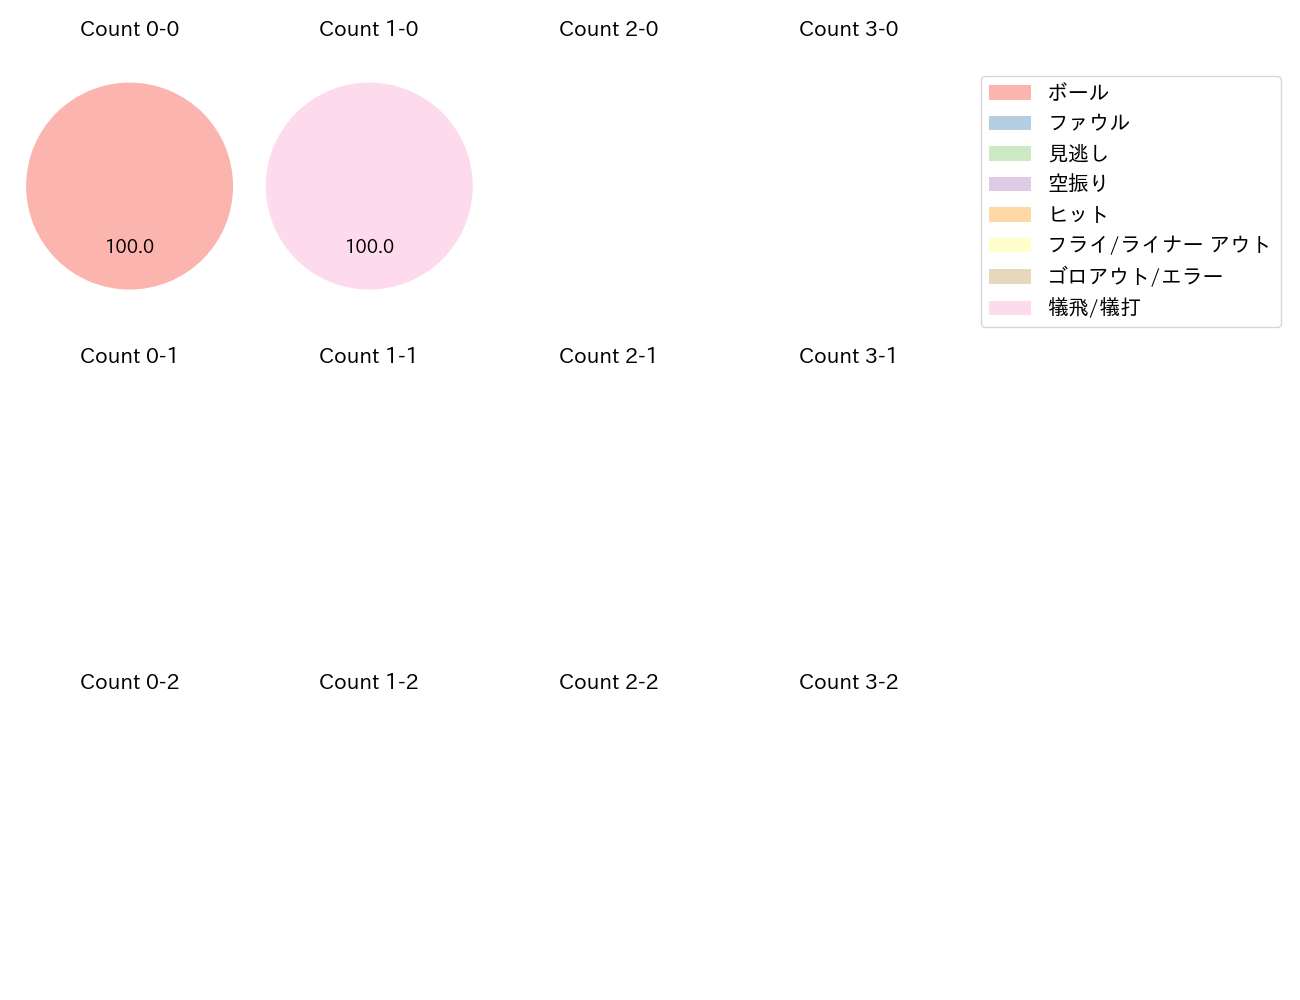 小林 誠司の球数分布(2021年3月)